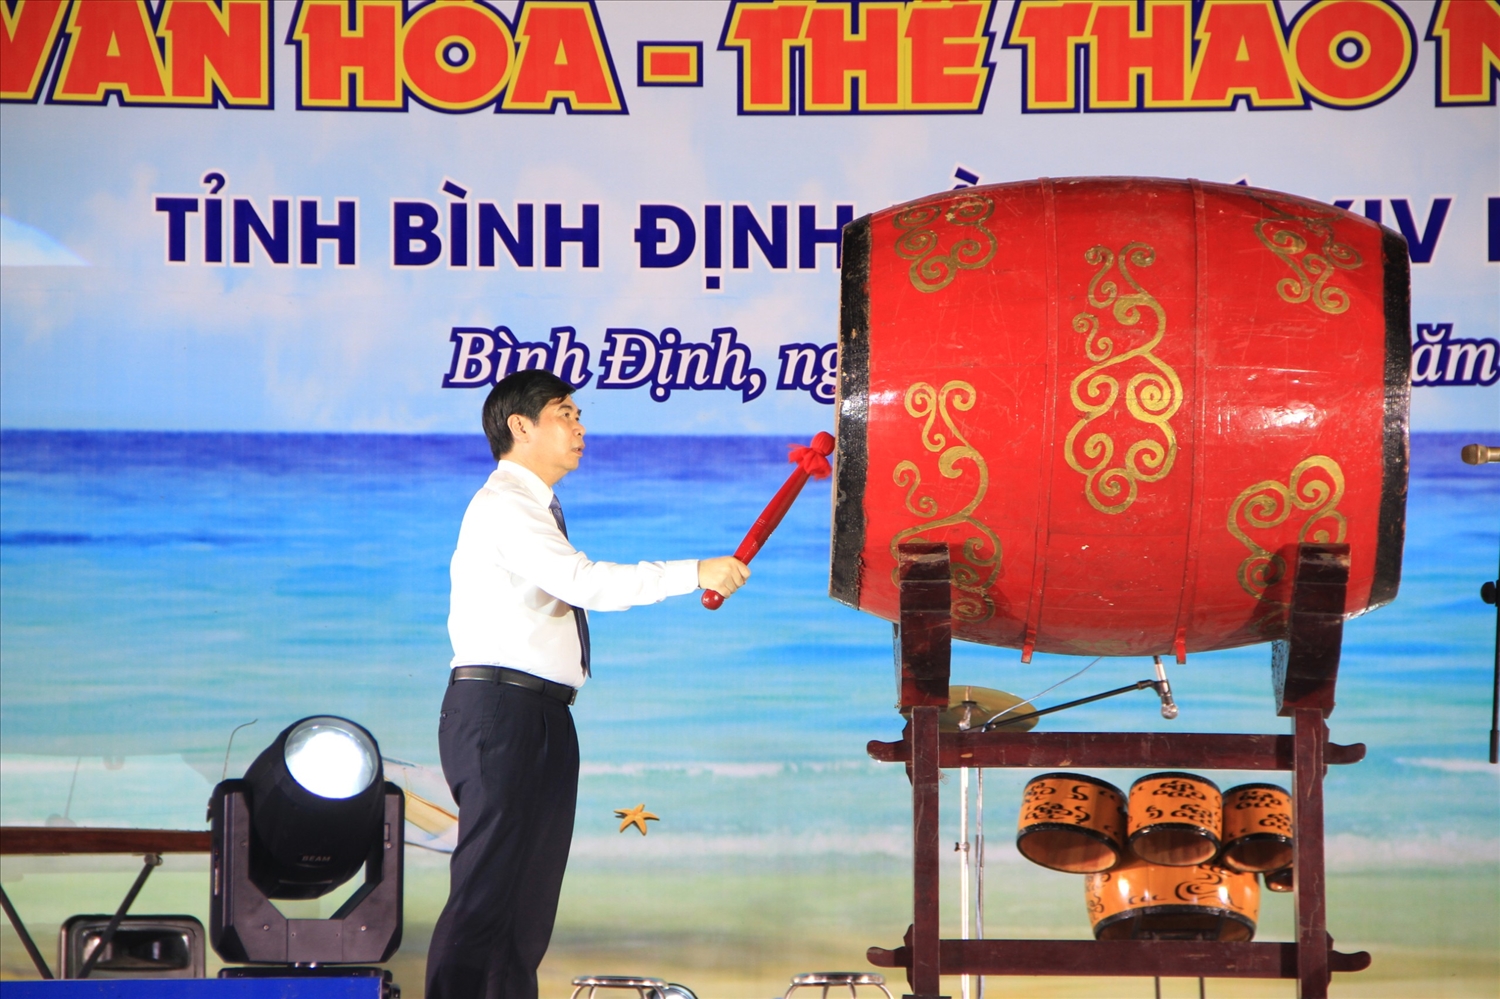 Ông Lâm Hải Giang, Phó chủ tịch UBND tỉnh Bình Định đánh tróng khai mạc ngày hội